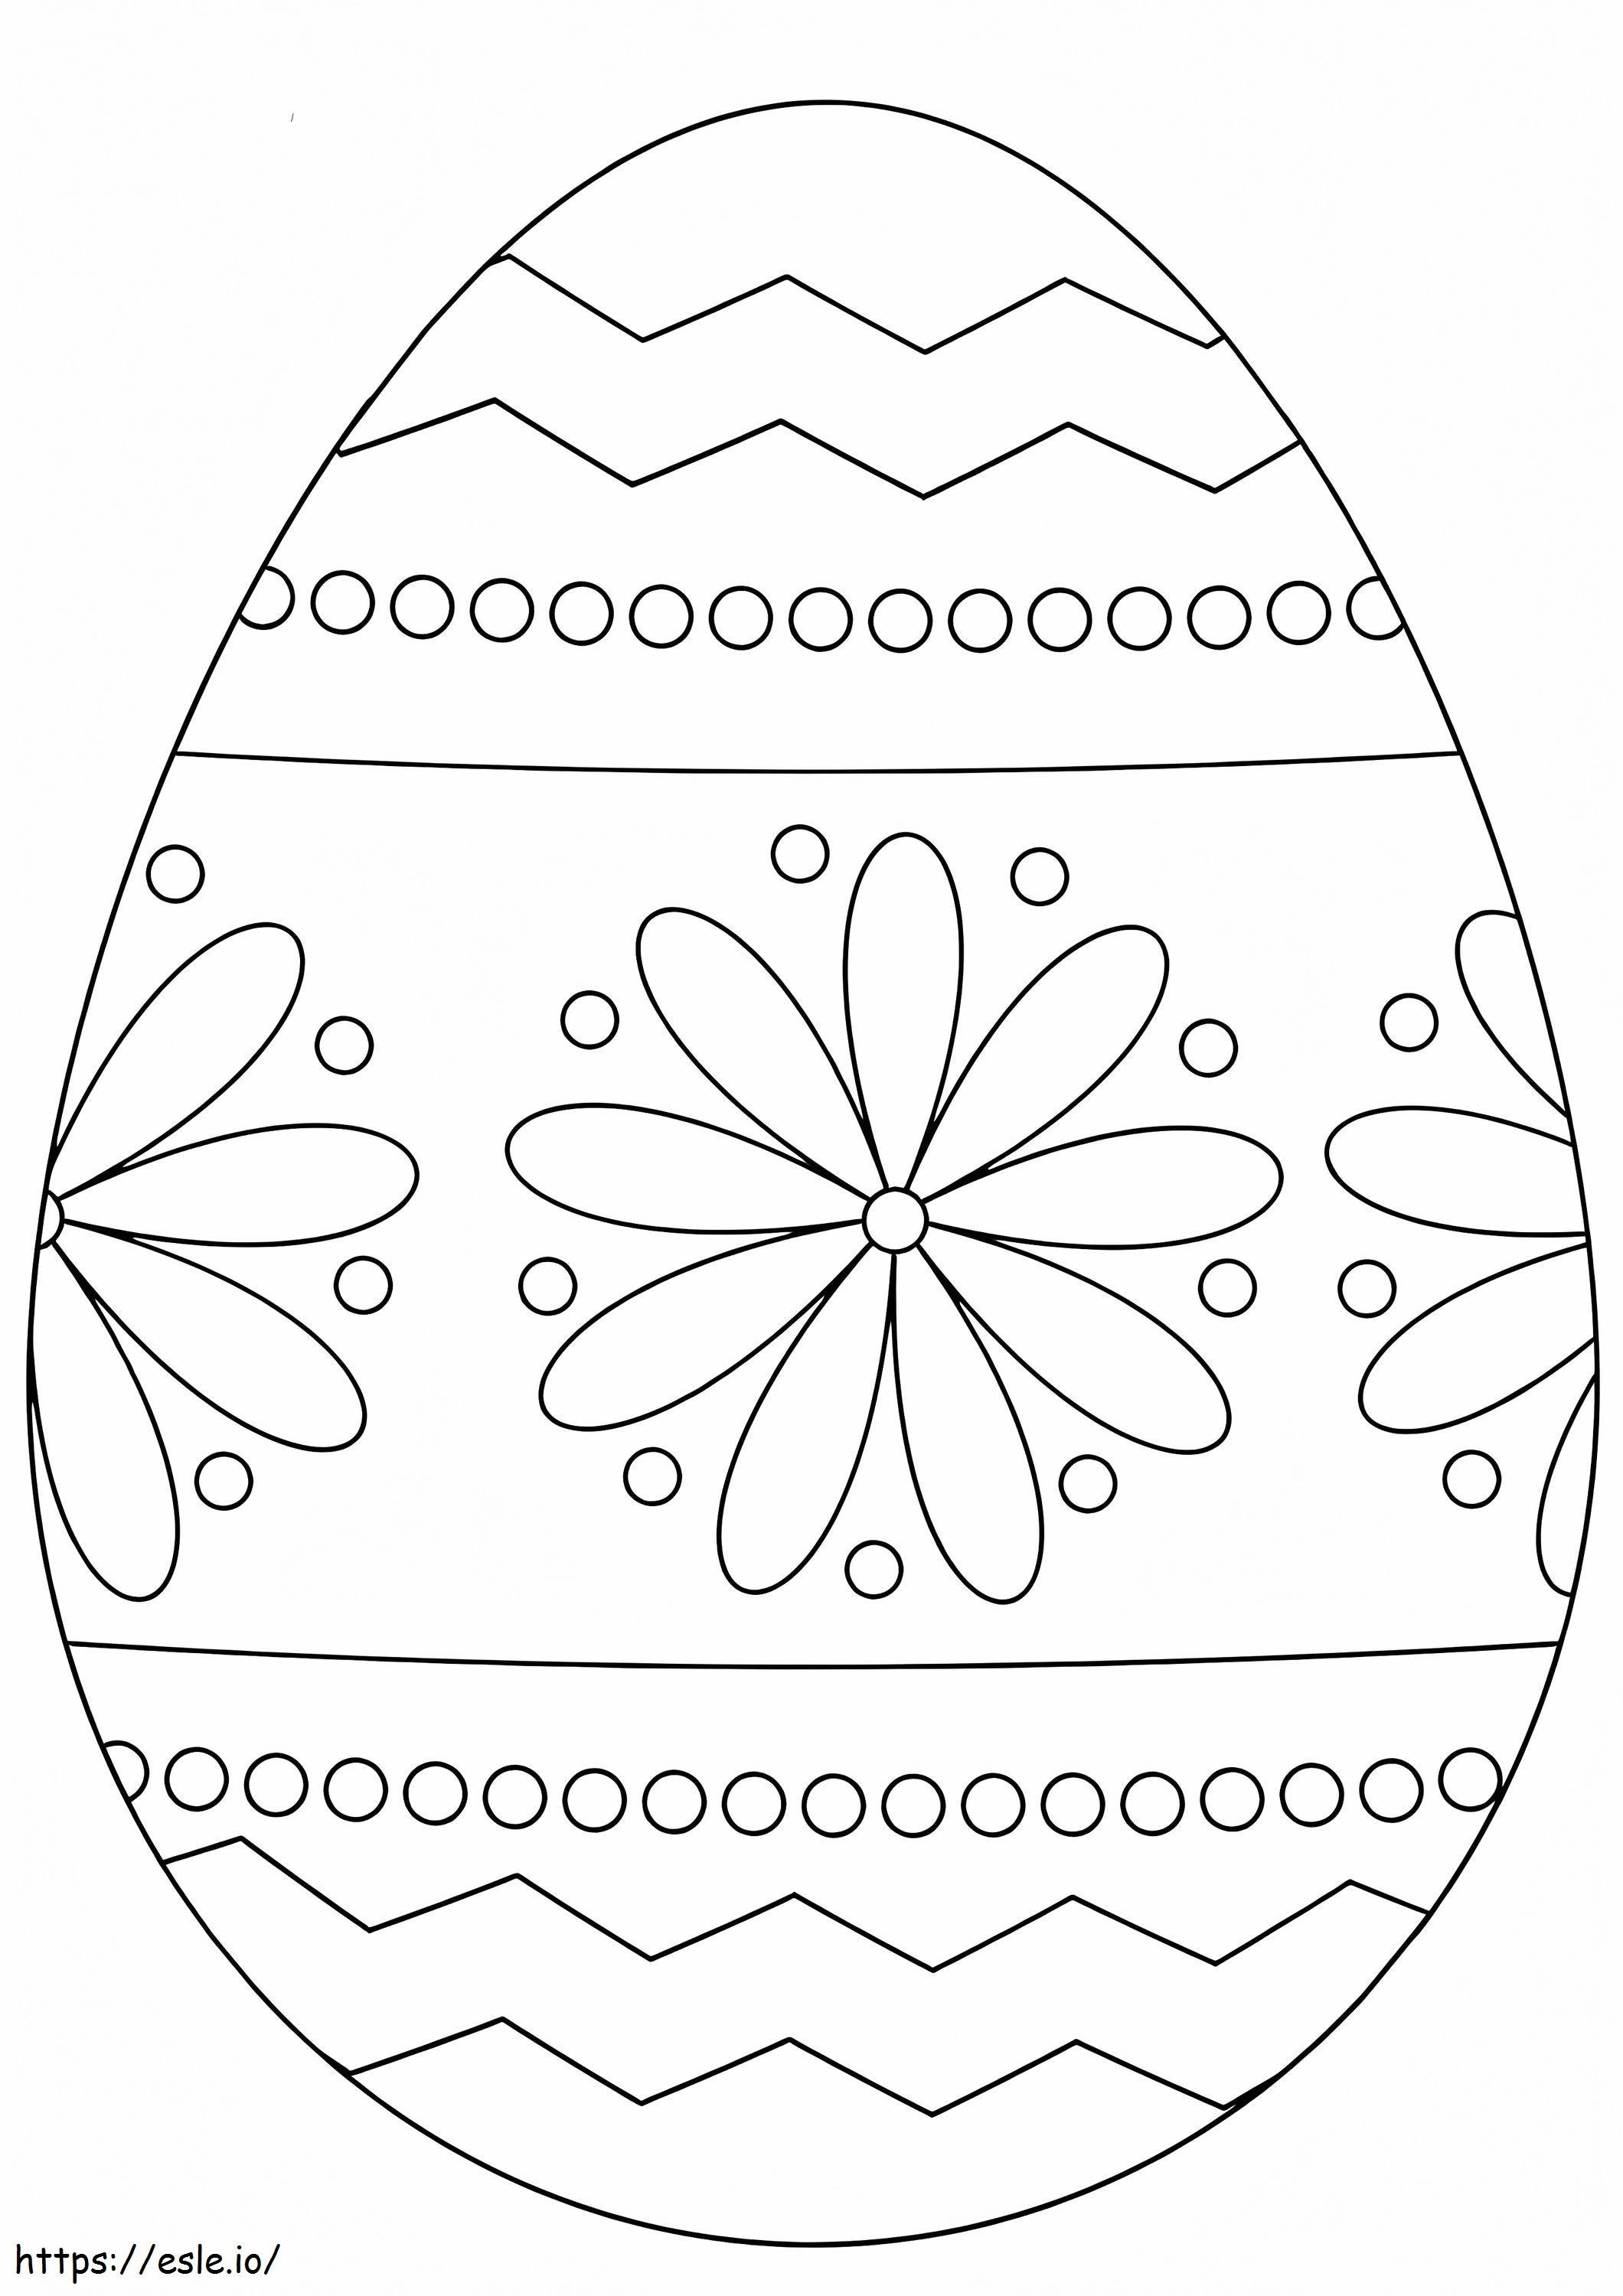 Maravilloso huevo de Pascua para colorear